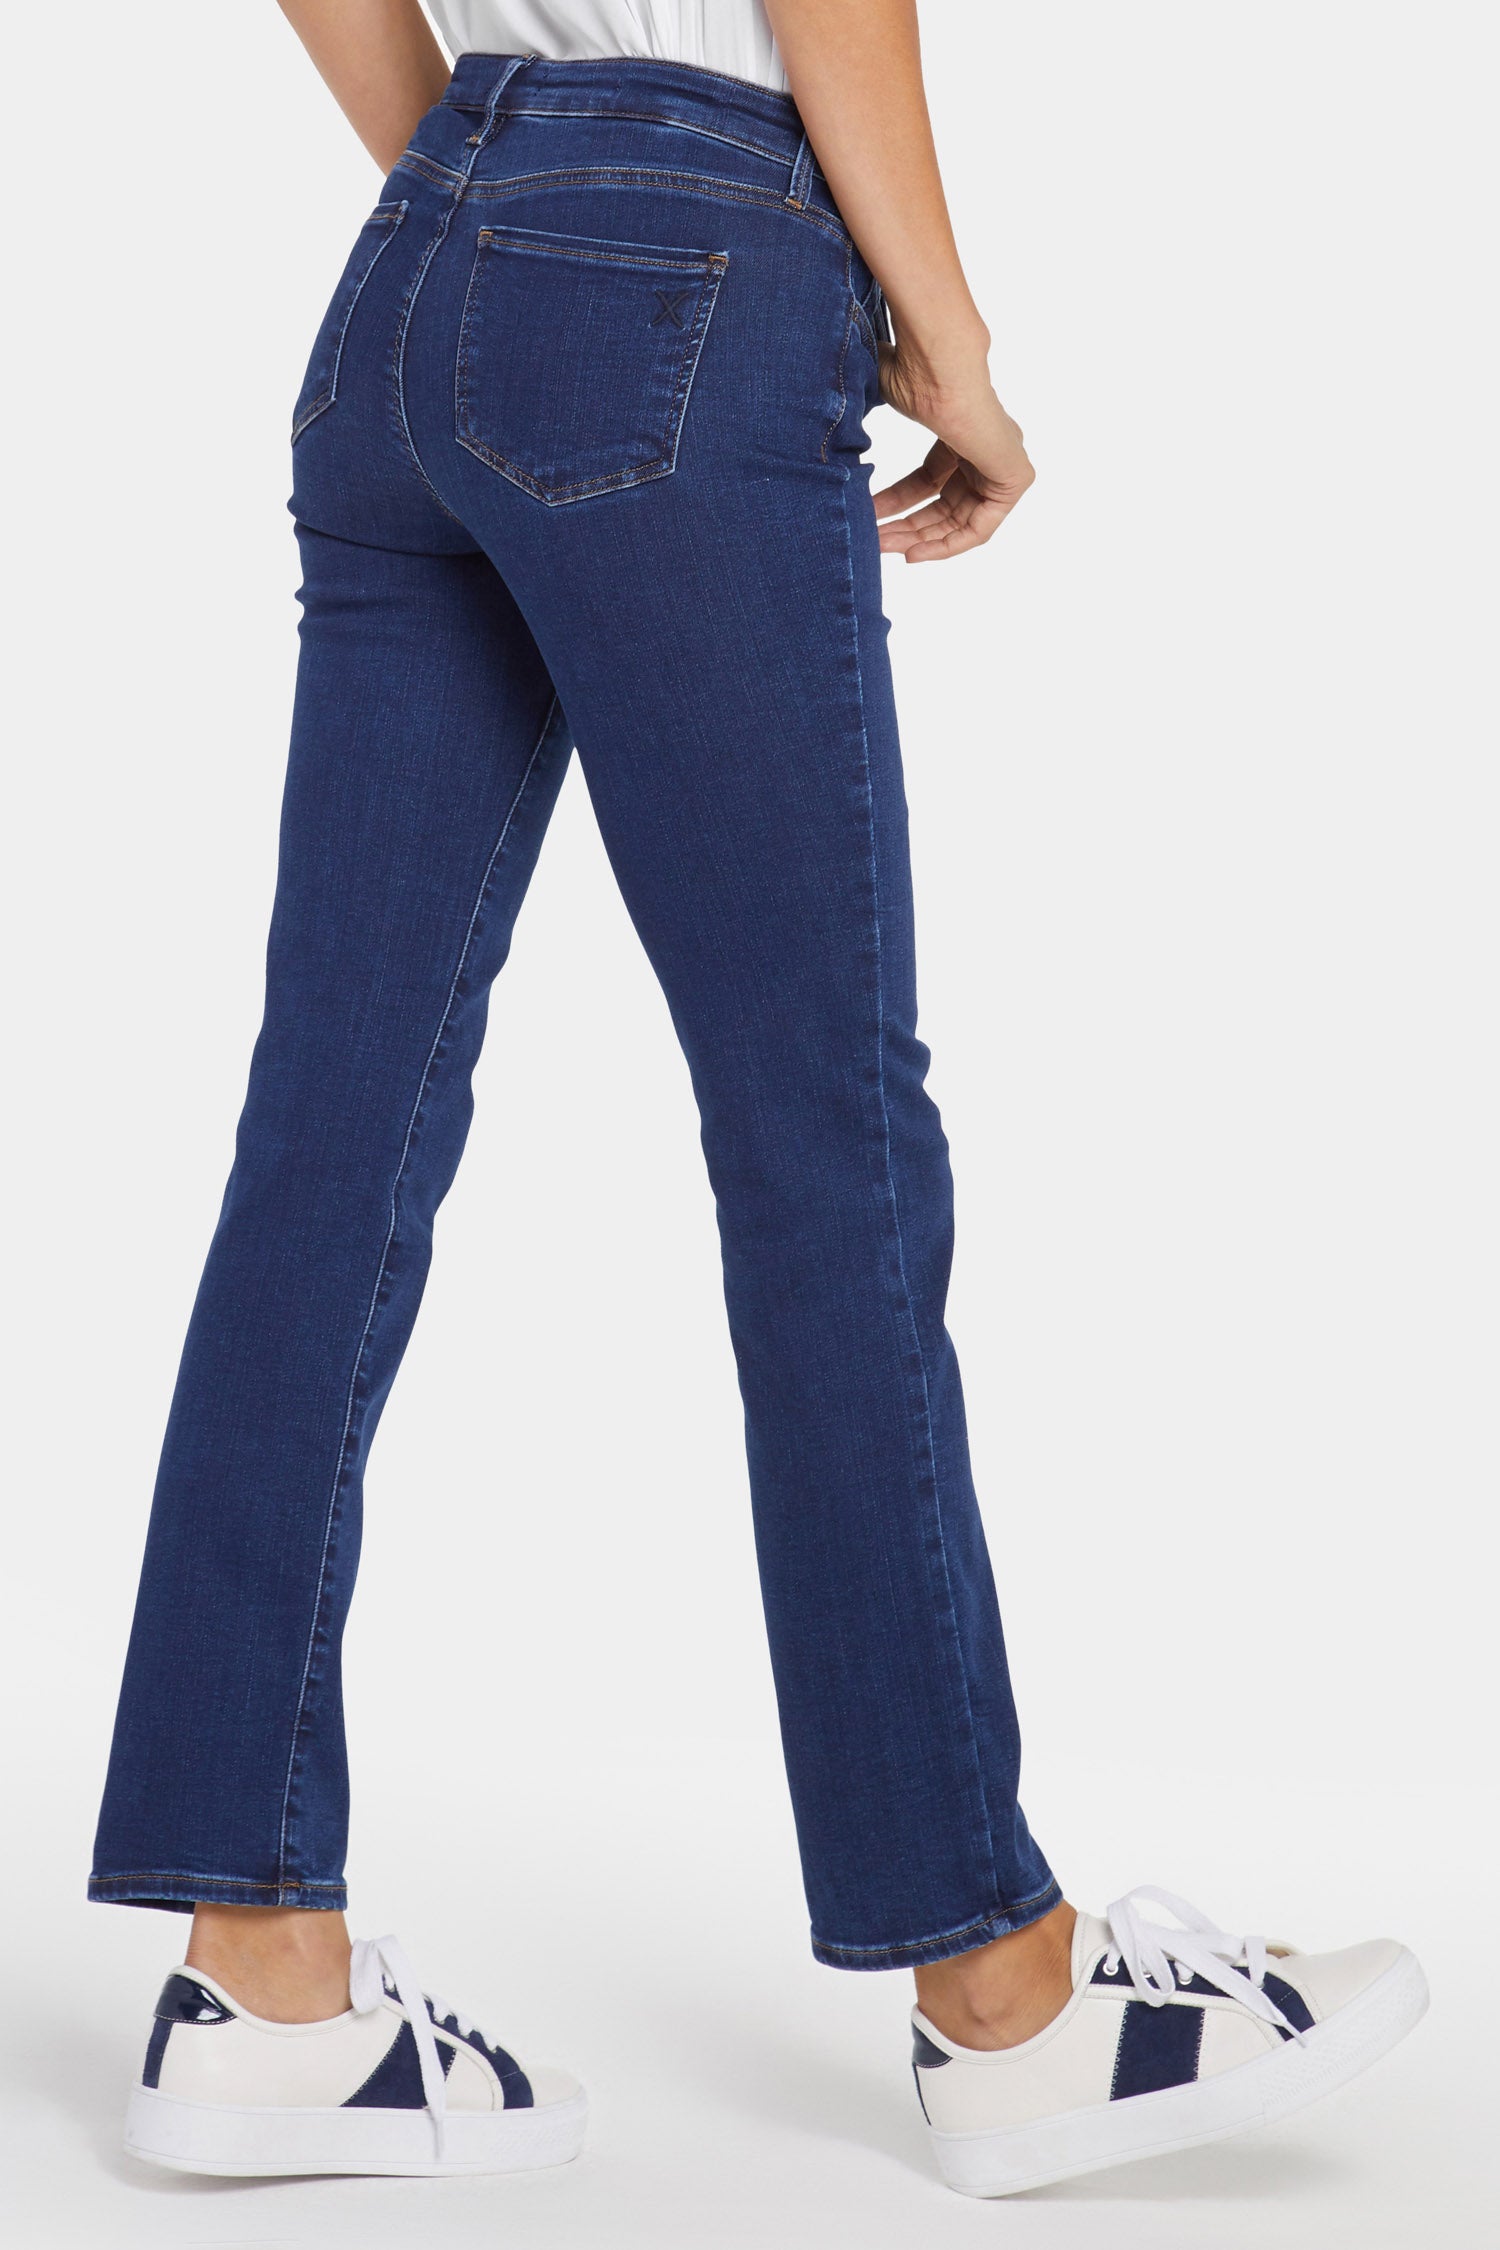 Sheri Slim Jeans - Incense Brown | NYDJ